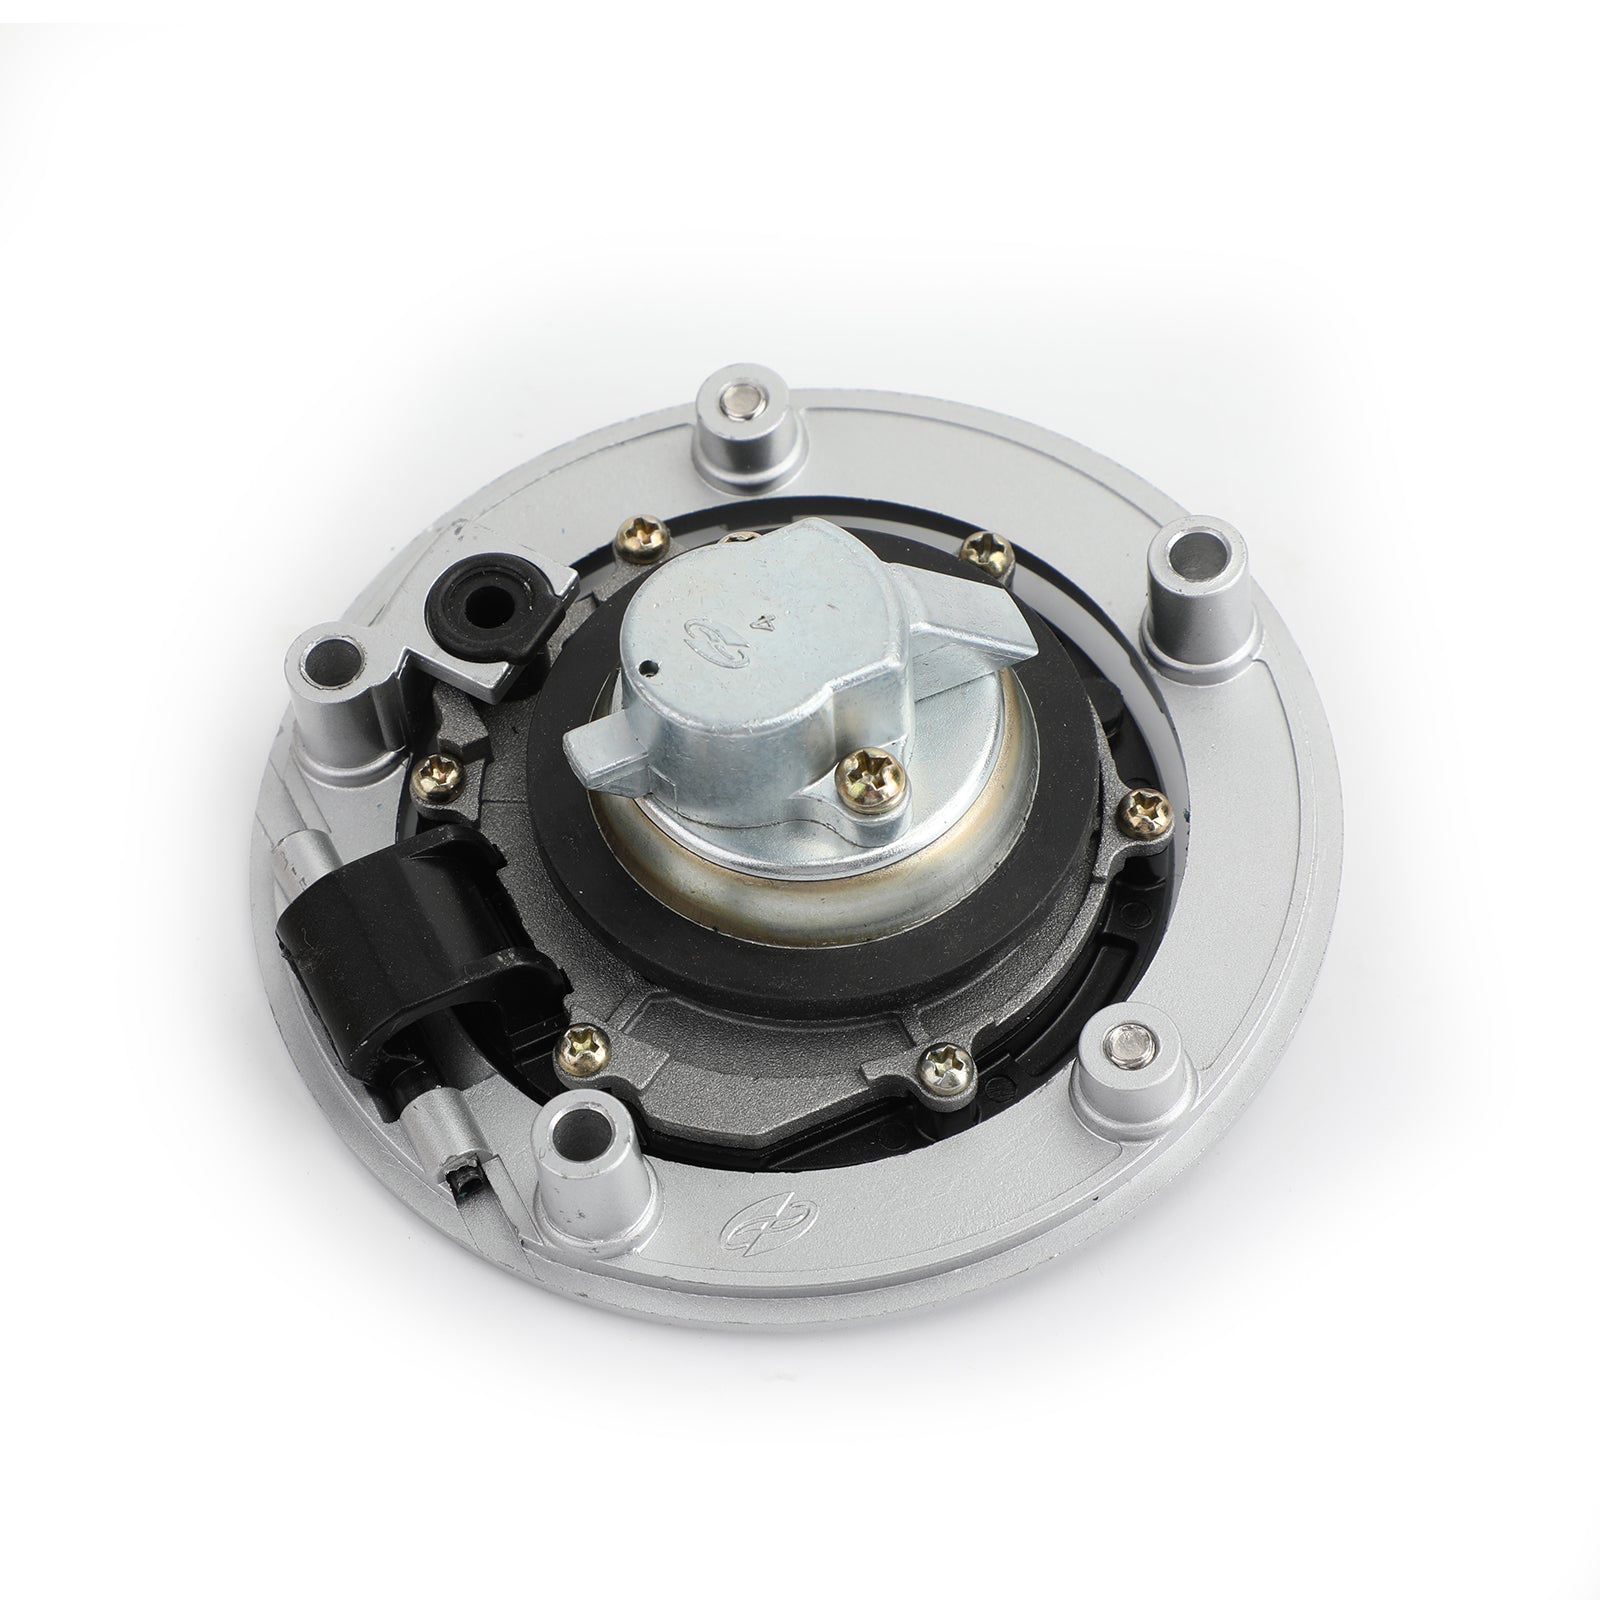 Ignition Switch Fuel Gas Cap Lock Keys For Suzuki GW250 Inazuma / GSXR 250 13-17